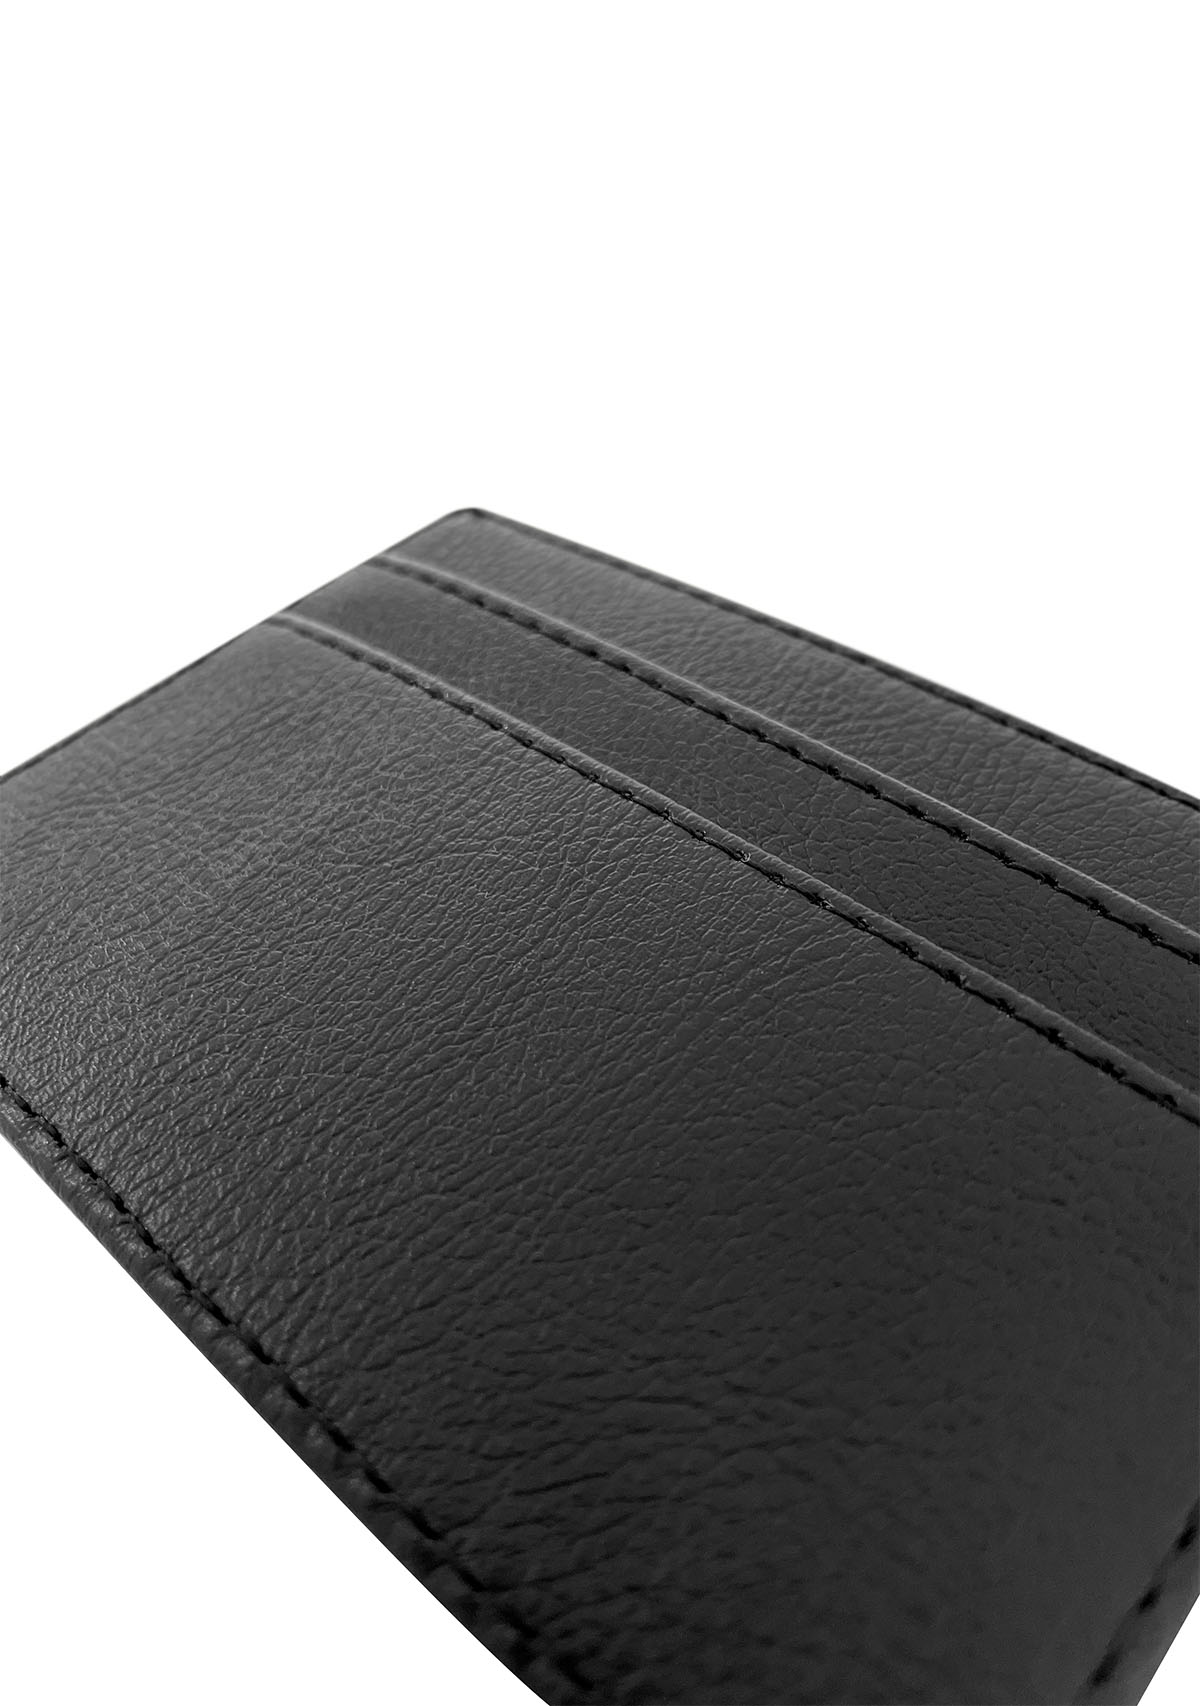 Black Apple Leather Cardholder